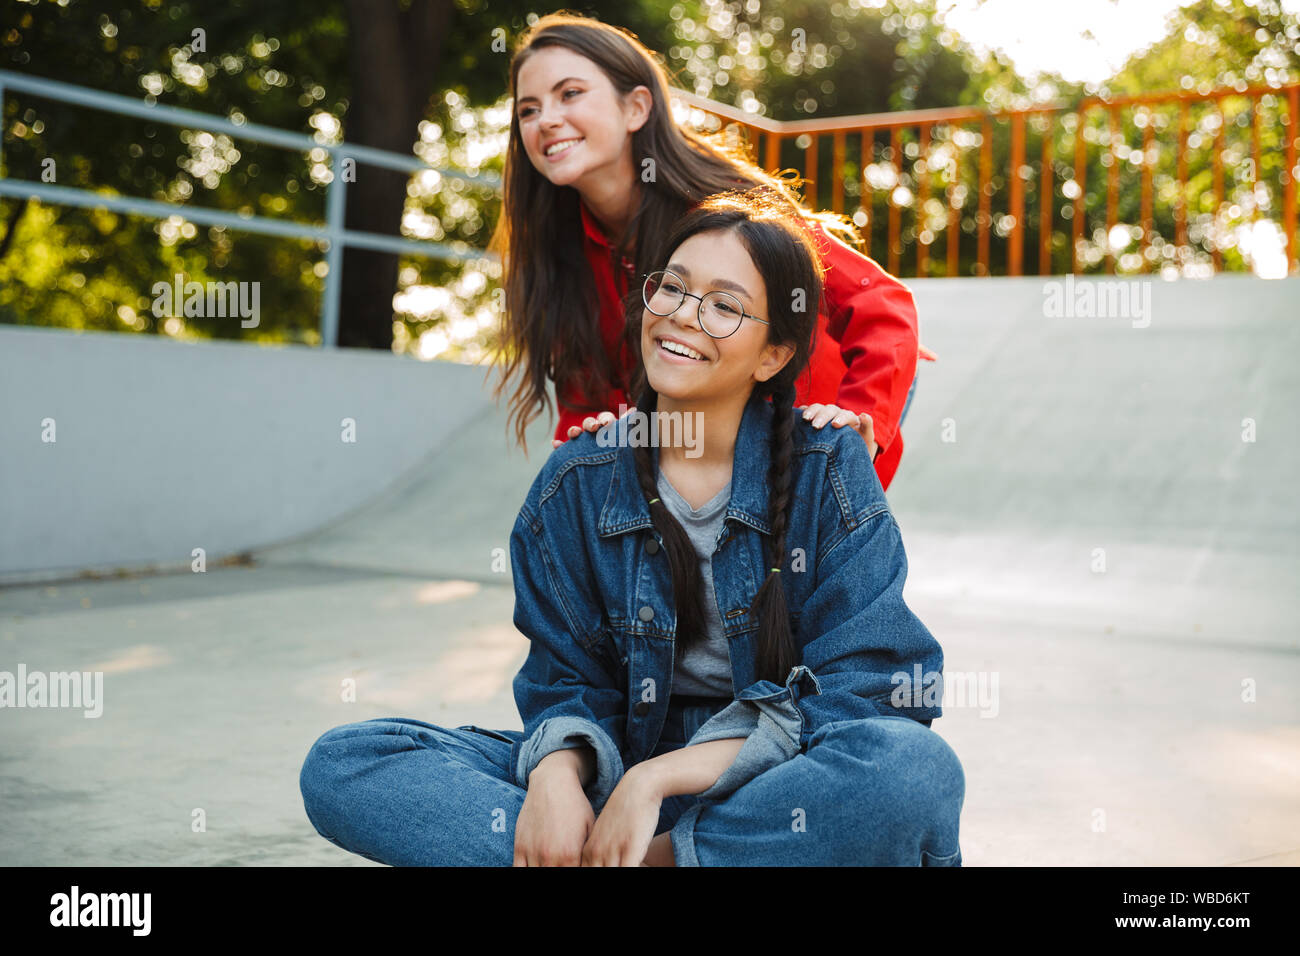 Image de deux jolies filles vêtus de vêtements en denim de rire et équitation skateboard ensemble dans skate park Banque D'Images